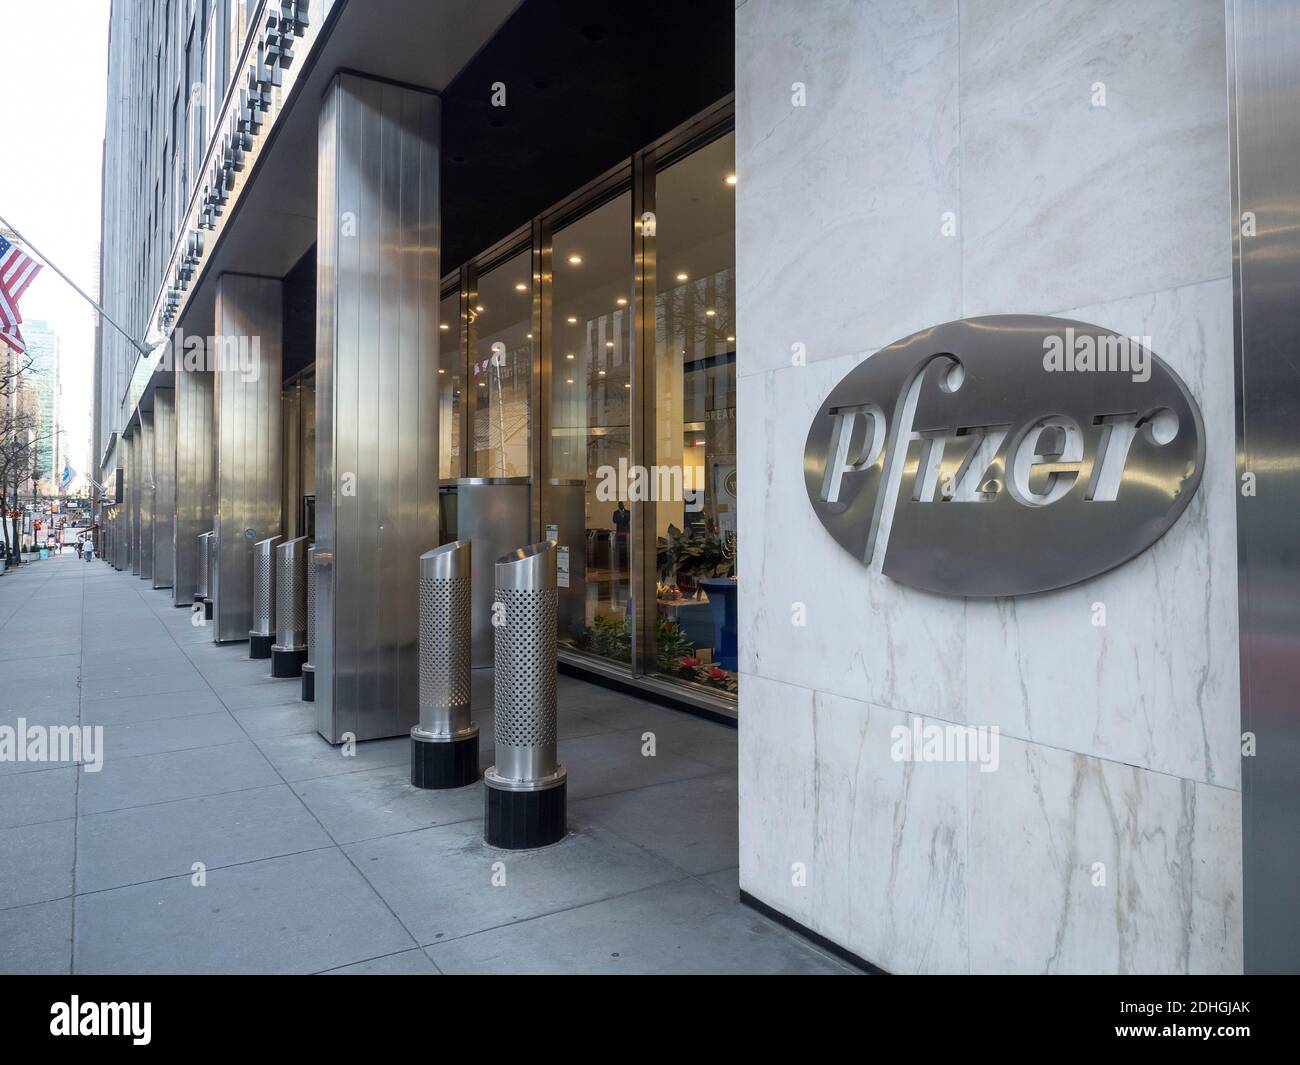 Nueva York, NY, EE.UU. - 10 de diciembre de 2020: Exterior de la sede de Pfizer World buiding exterior. Pfizer Inc. Es una multinacional farmacéutica estadounidense Foto de stock